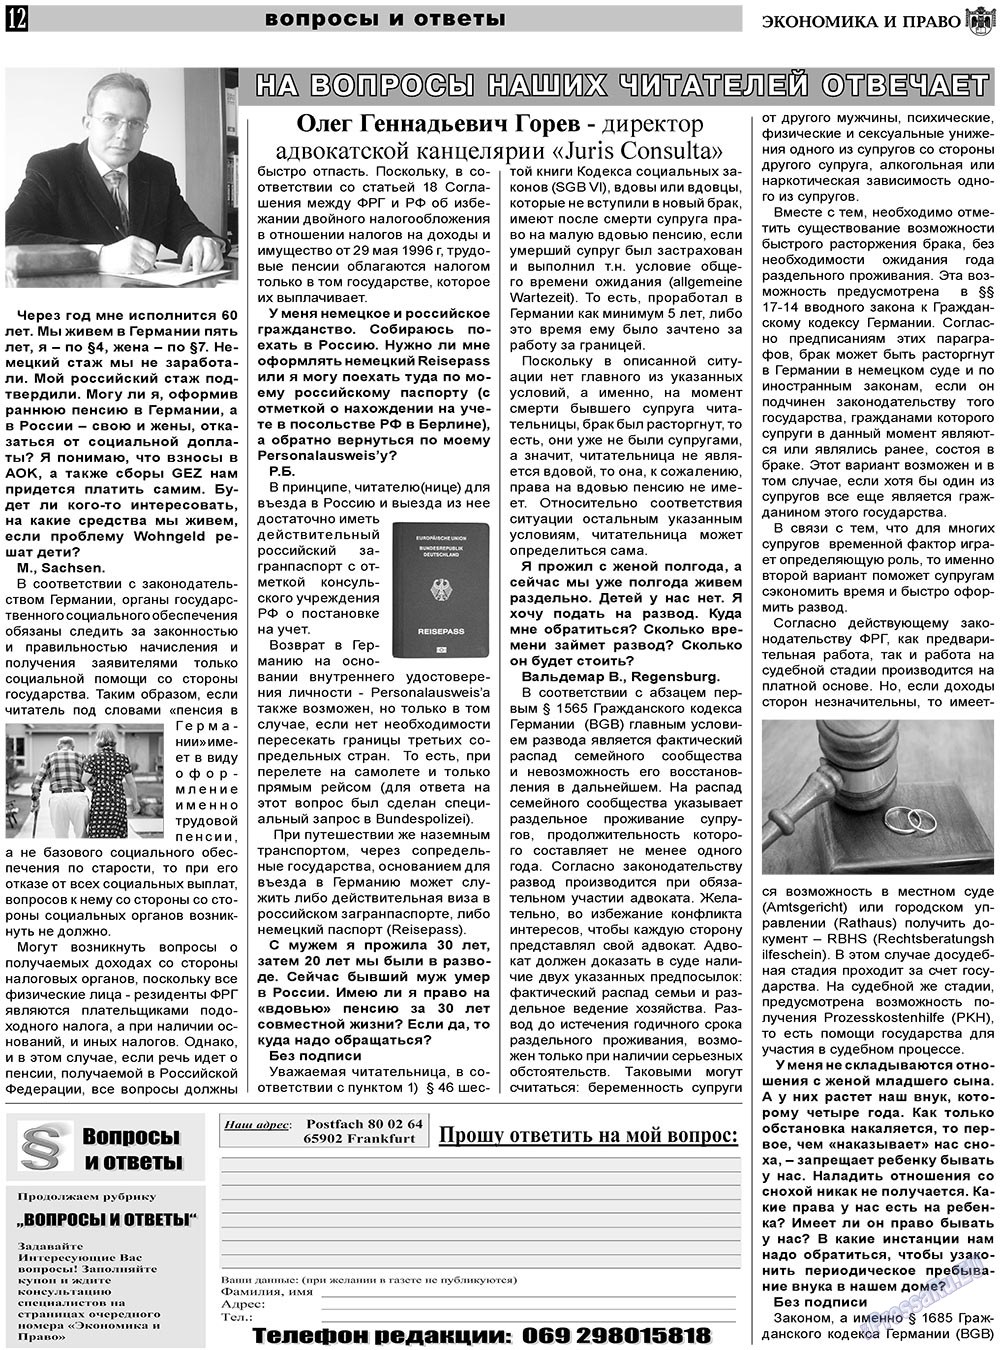 Экономика и право, газета. 2011 №2 стр.12